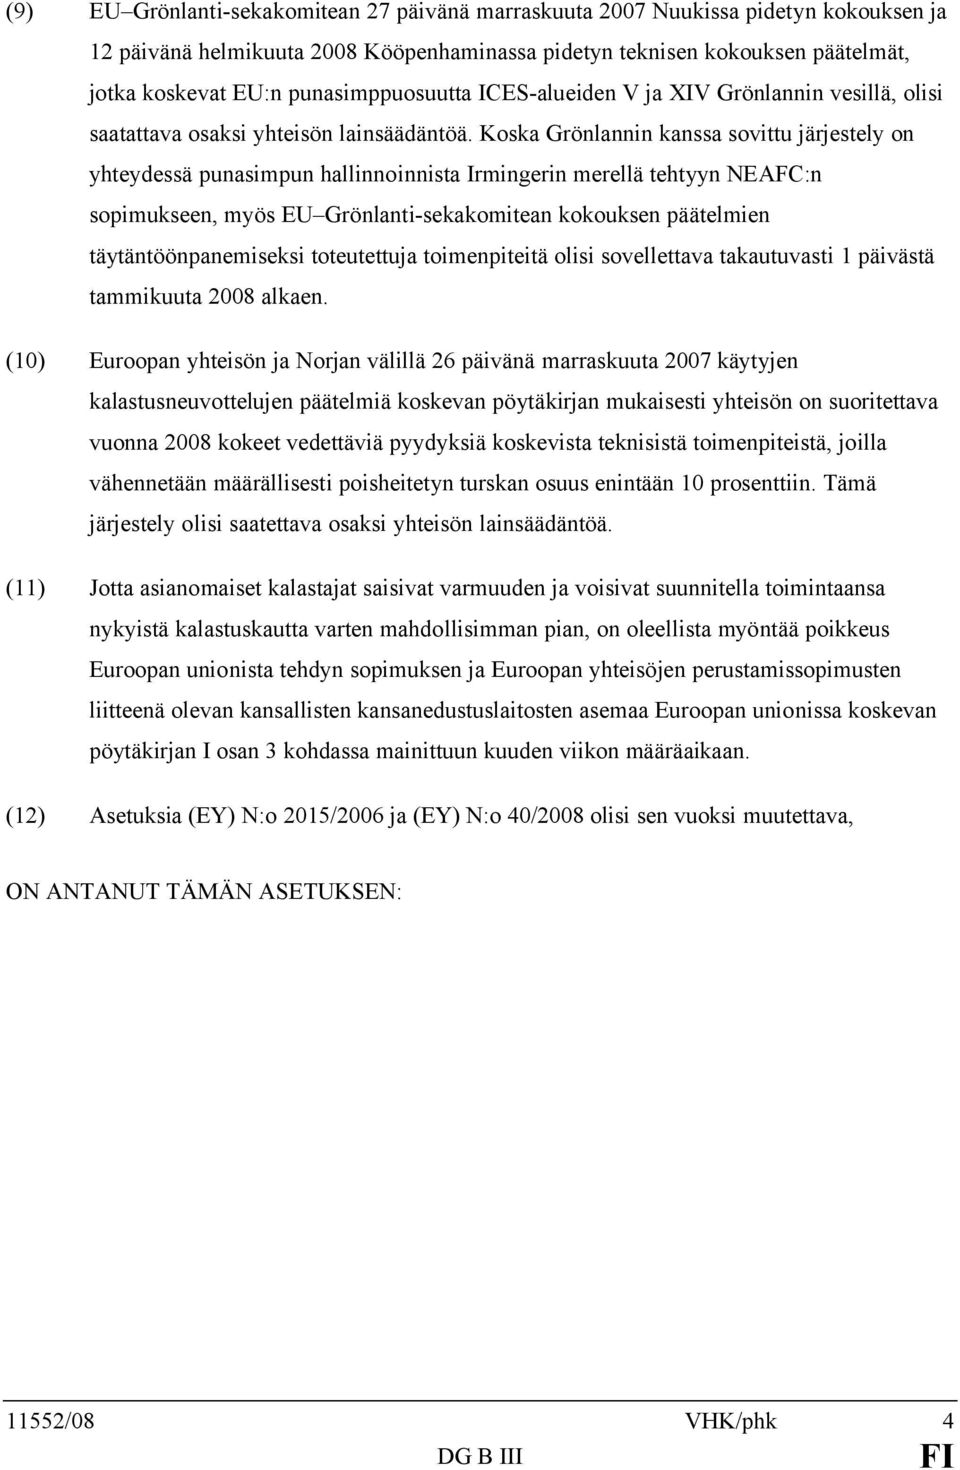 Koska Grönlannin kanssa sovittu järjestely on yhteydessä punasimpun hallinnoinnista Irmingerin merellä tehtyyn NEAFC:n sopimukseen, myös EU Grönlanti-sekakomitean kokouksen päätelmien